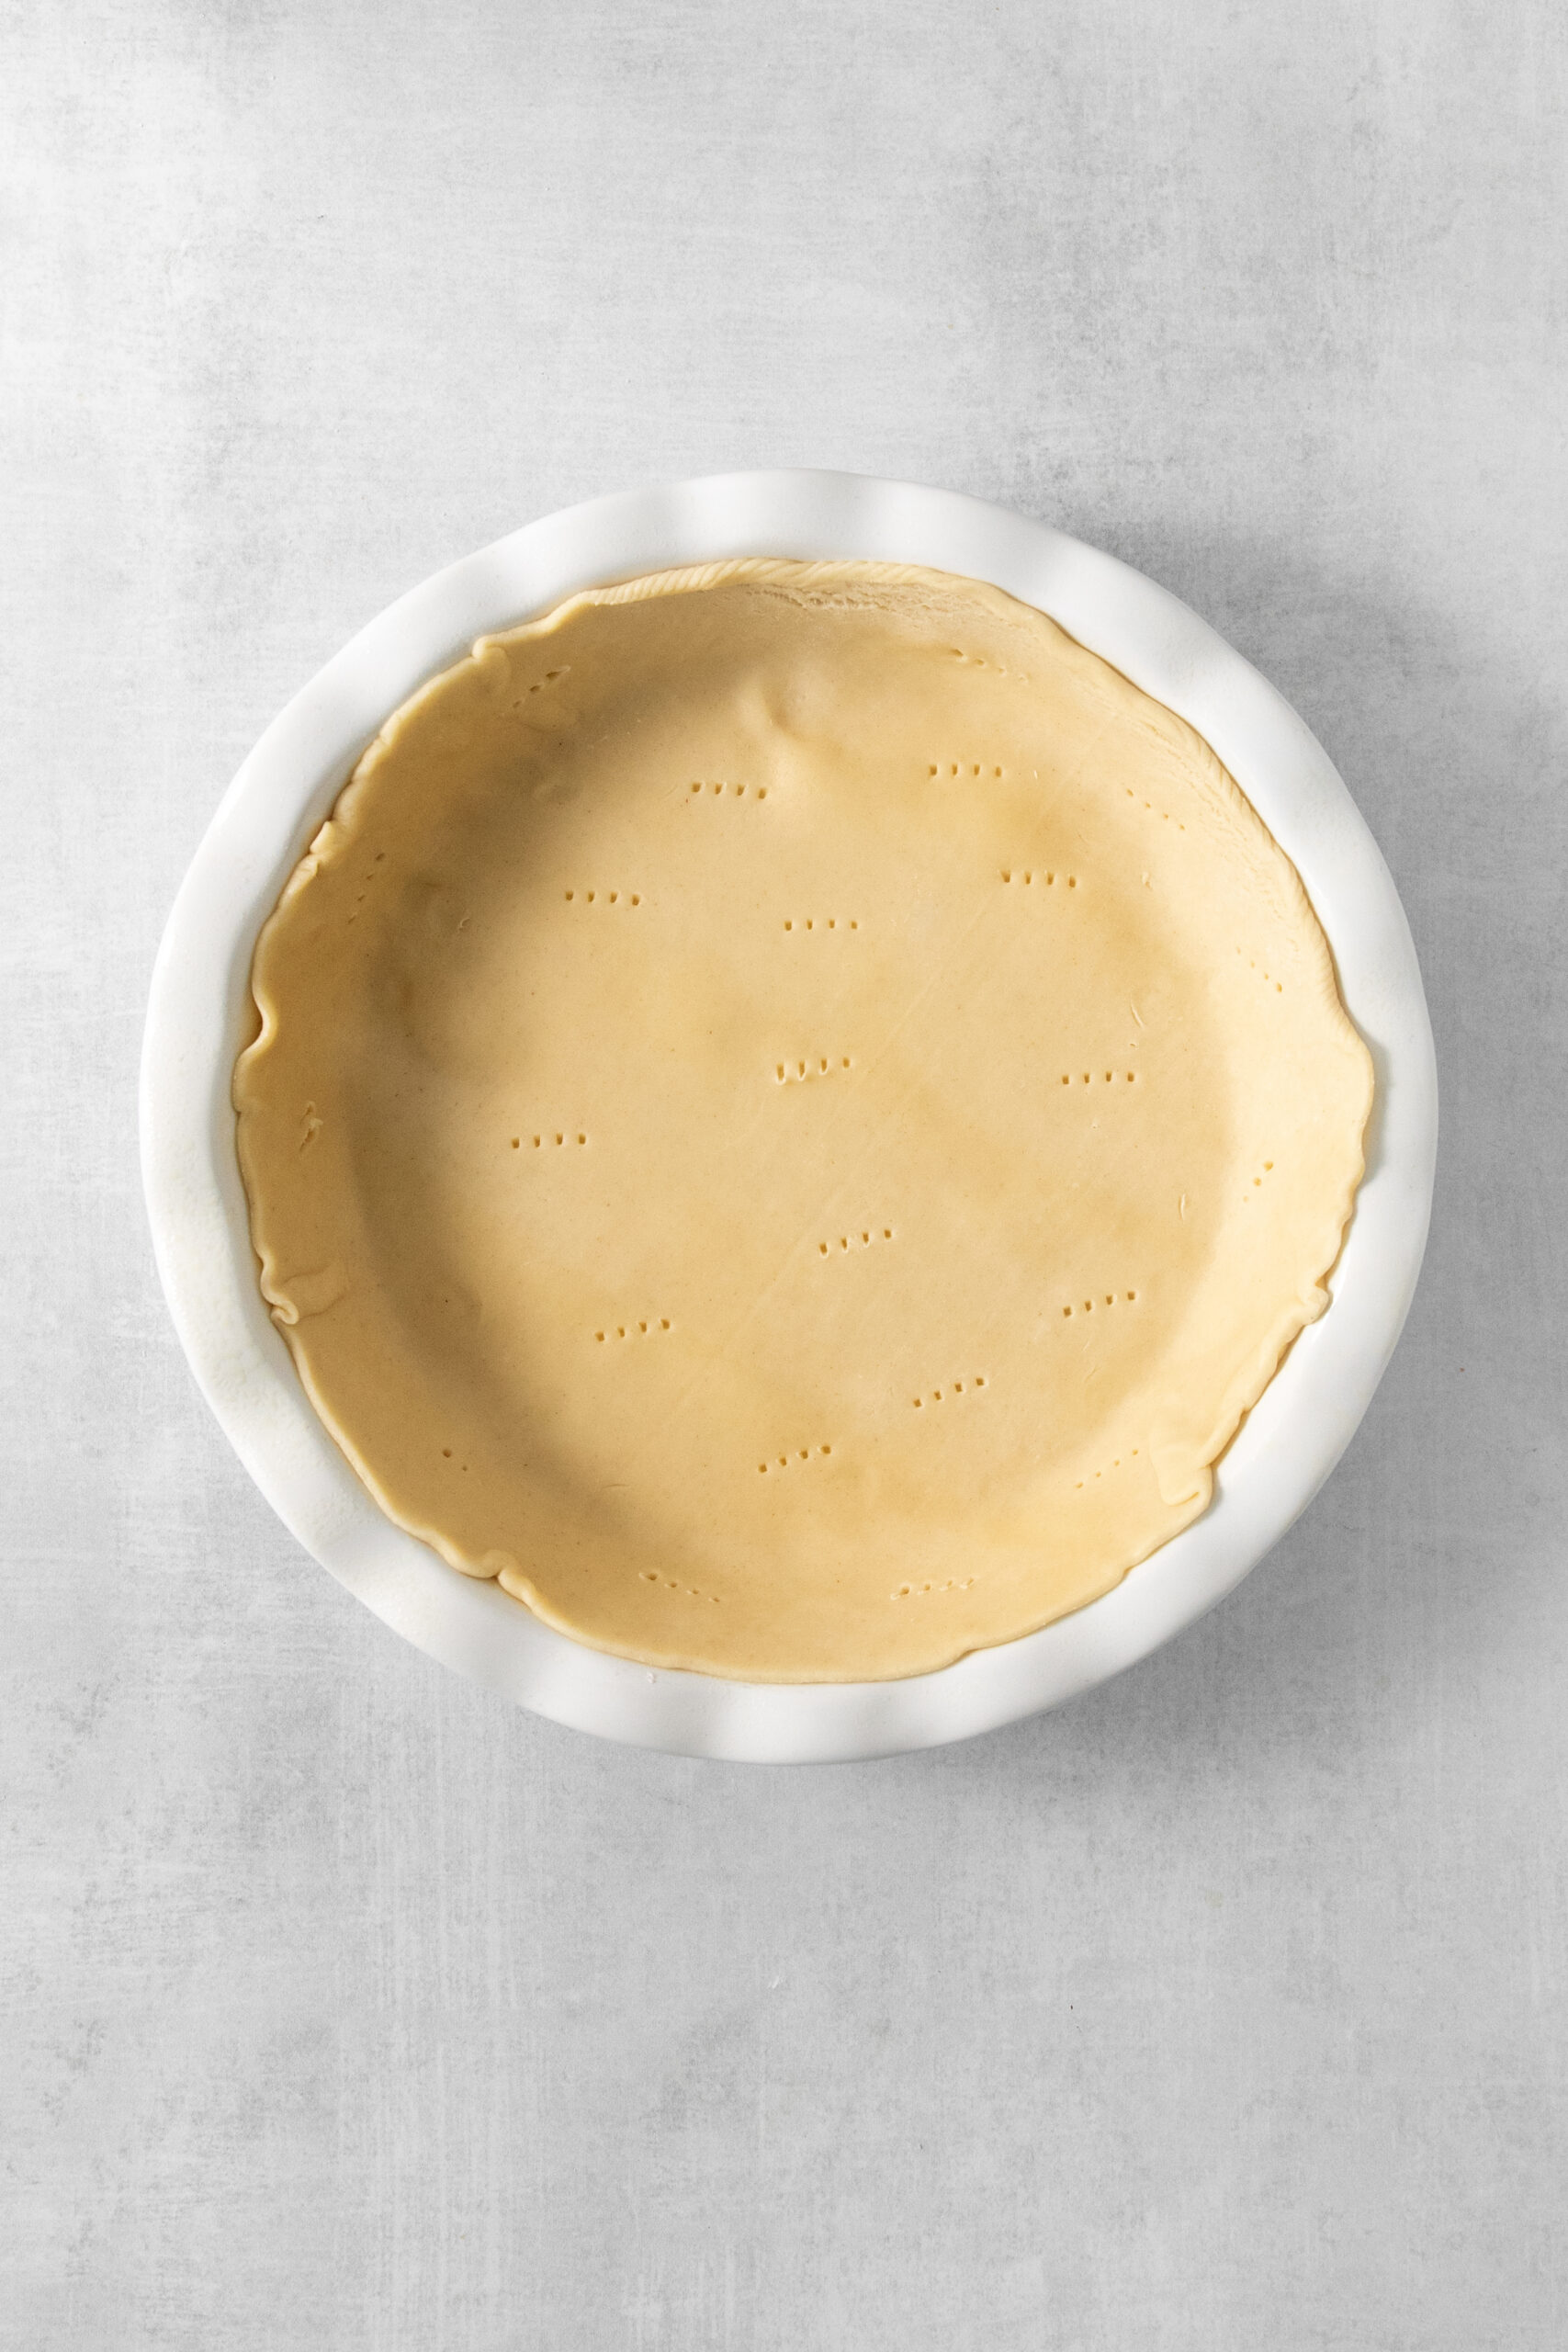 raw pie dough in a pie pan